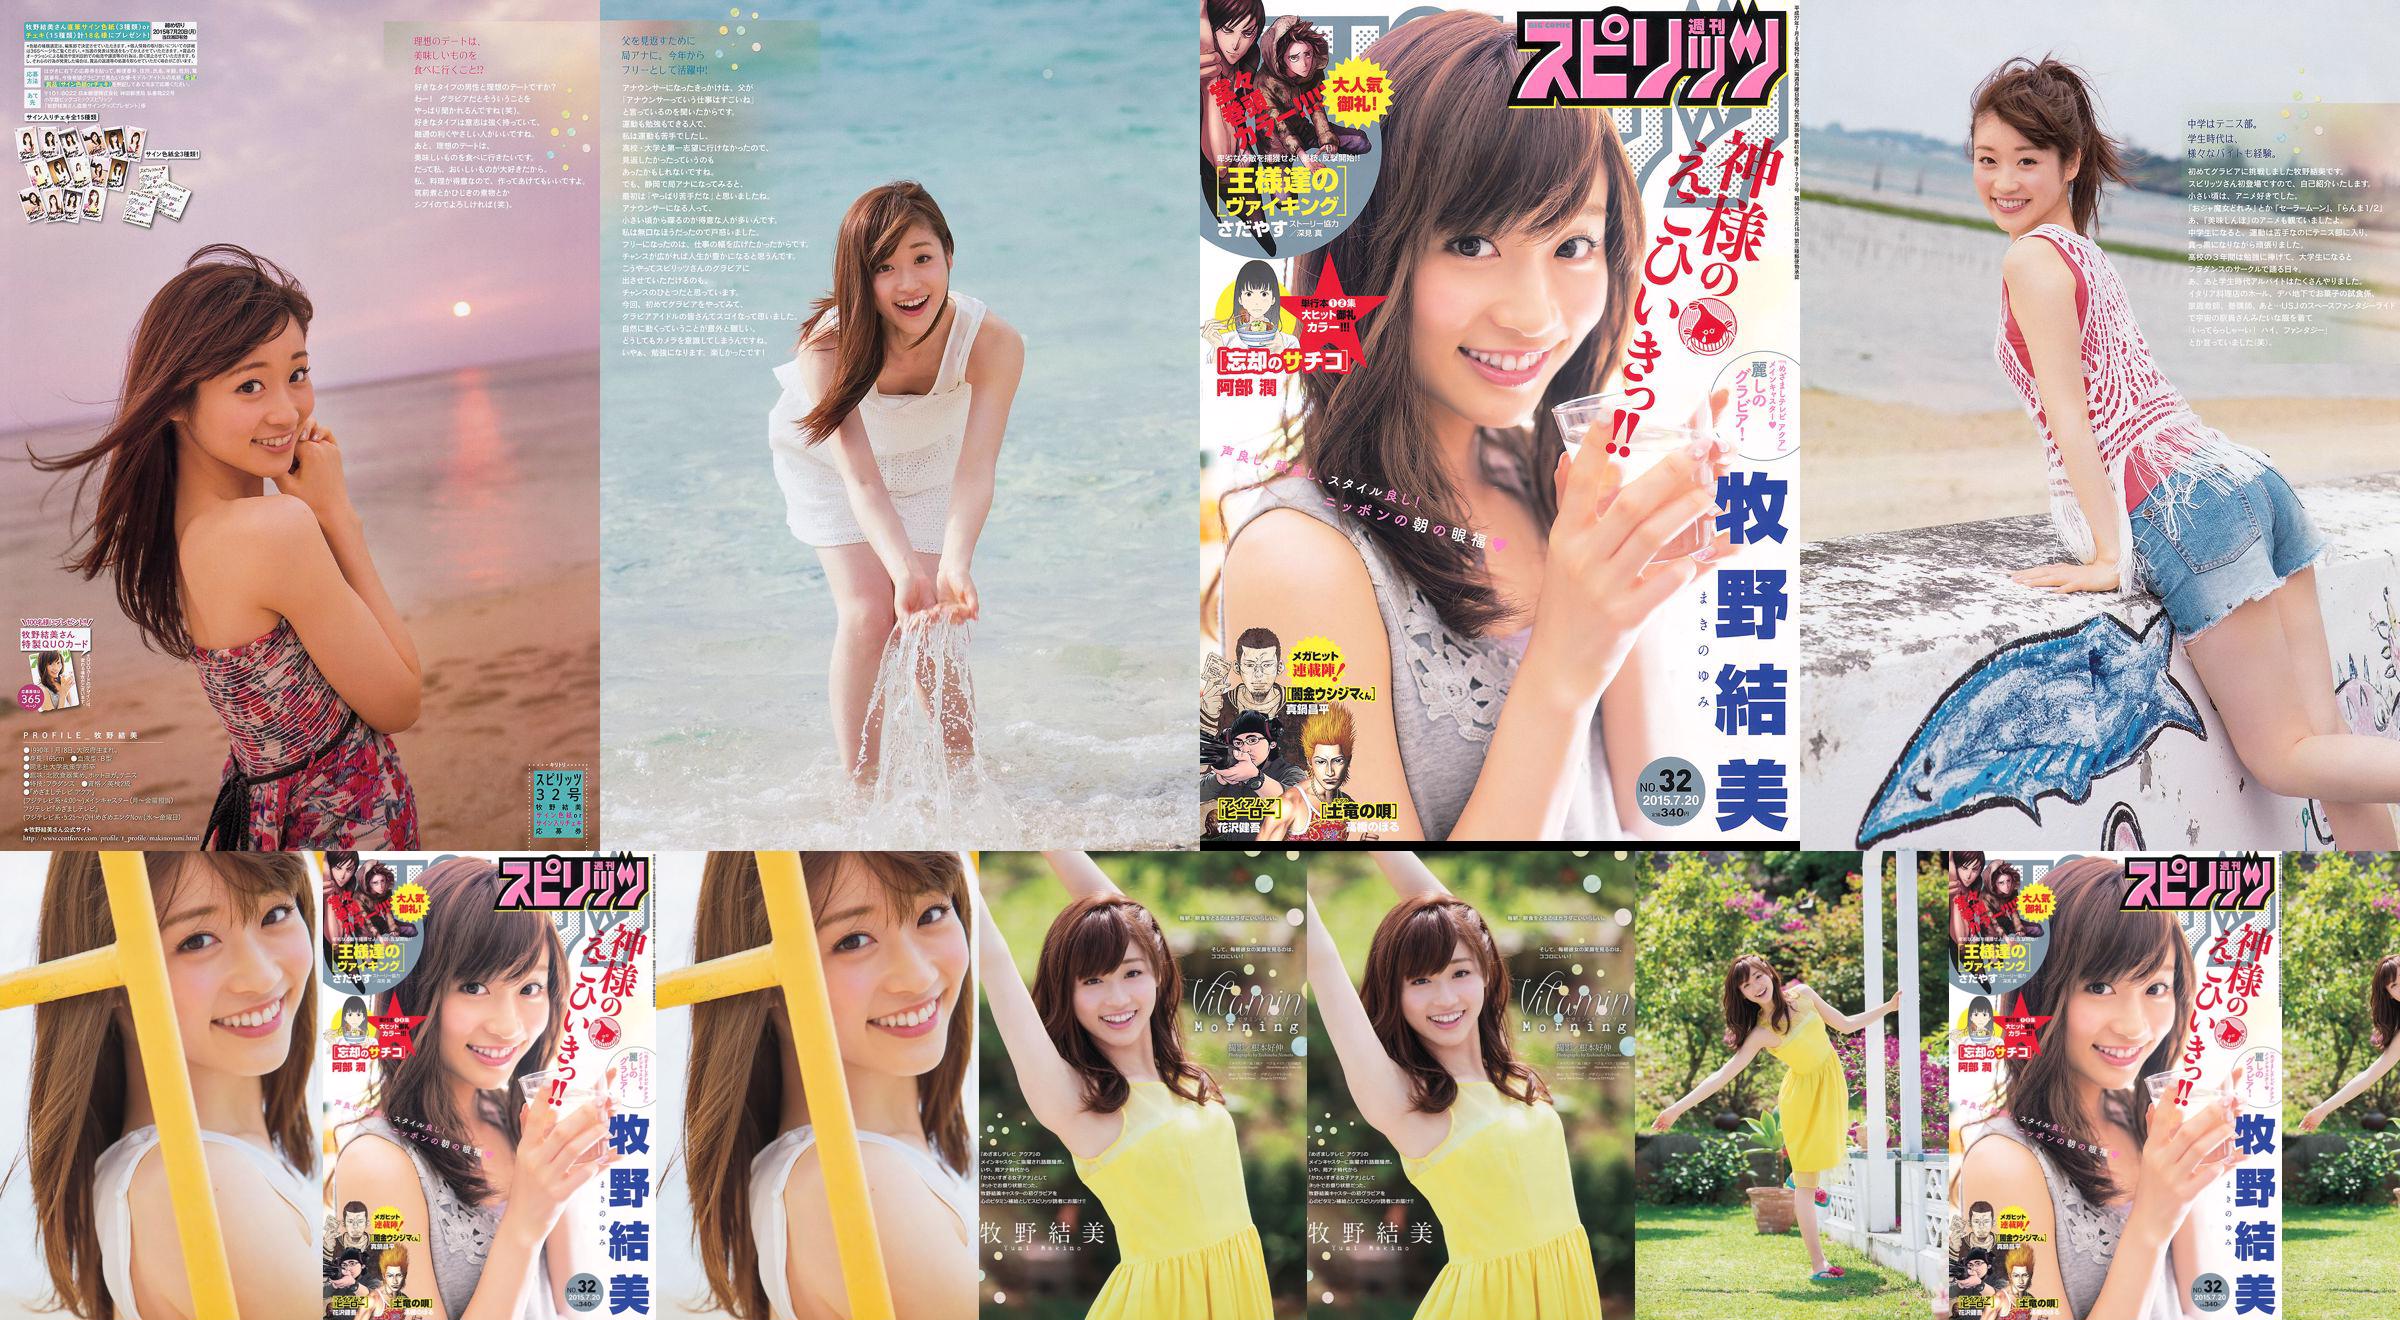 [Weekly Big Comic Spirits] Yumi Makino 2015 No.32 Photo Magazine No.1c7447 Página 4